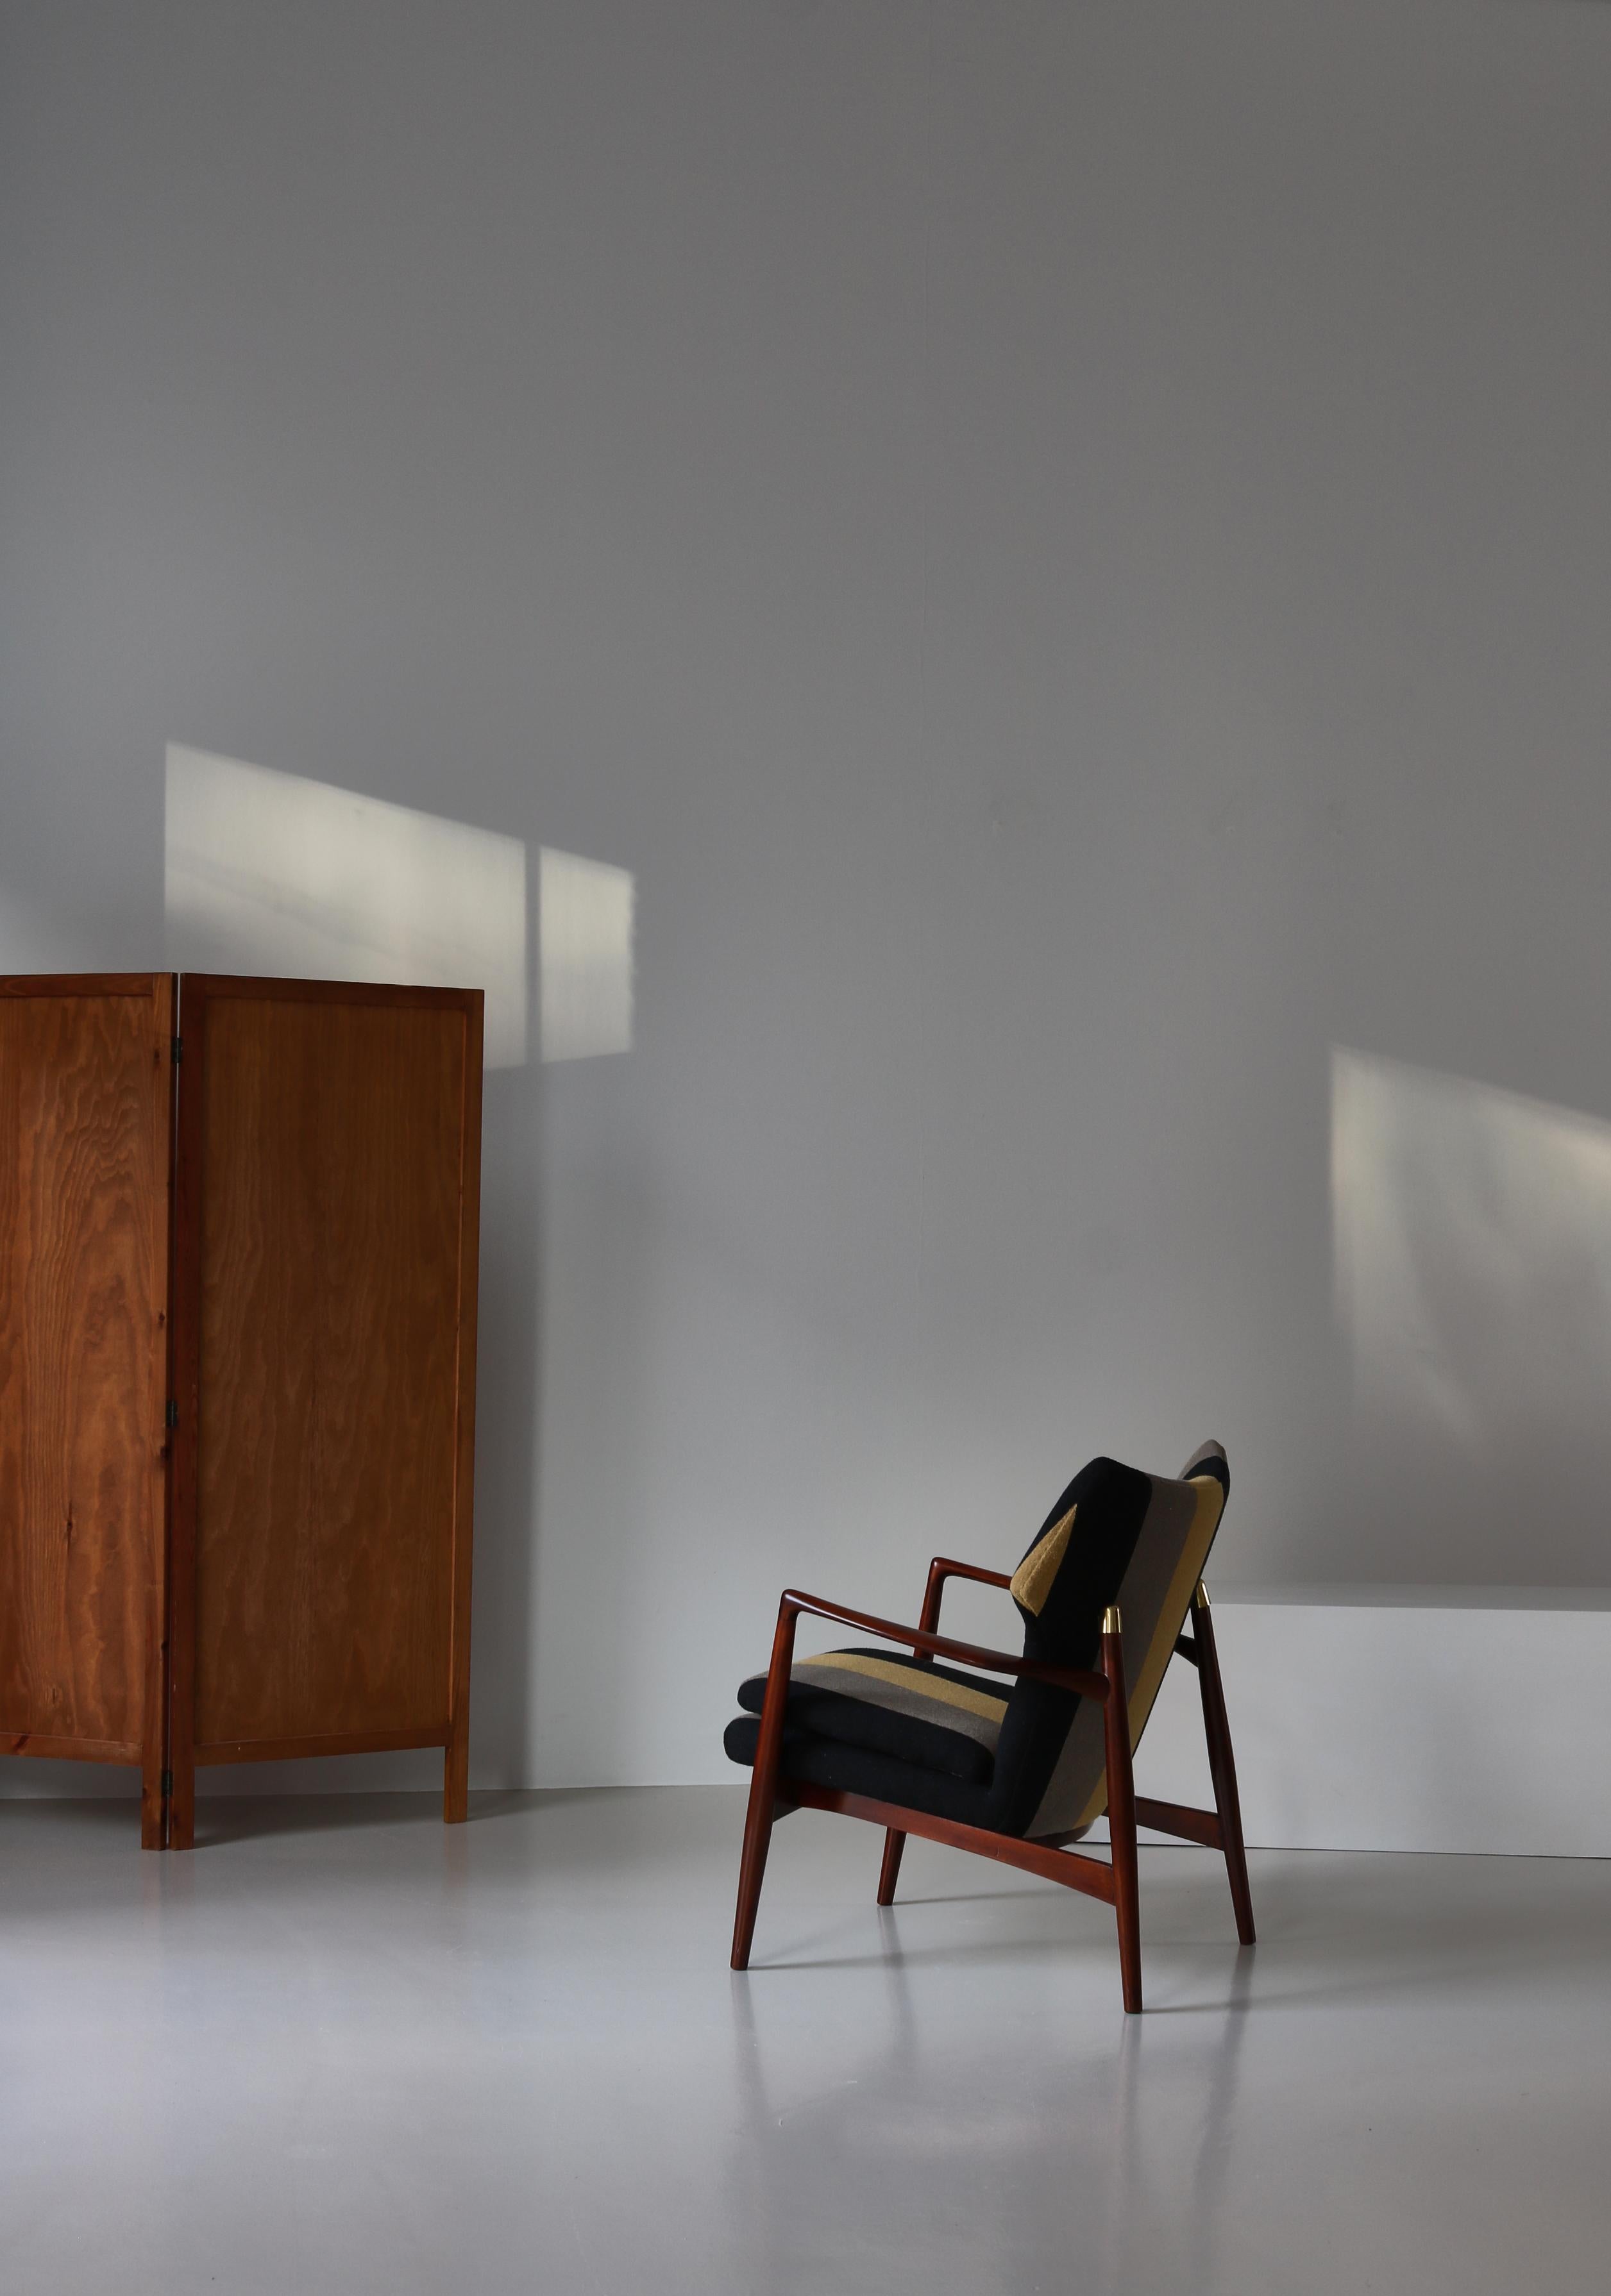 Seltener Sessel der dänischen Architekten Eva & Nils Koppel aus den frühen 1950er Jahren, hergestellt von Johannes Larsen. Der Stuhl ist aus massiver, gebeizter Buche gefertigt und wurde mit einem in Dänemark von Kjellerup-Webern handgefertigten